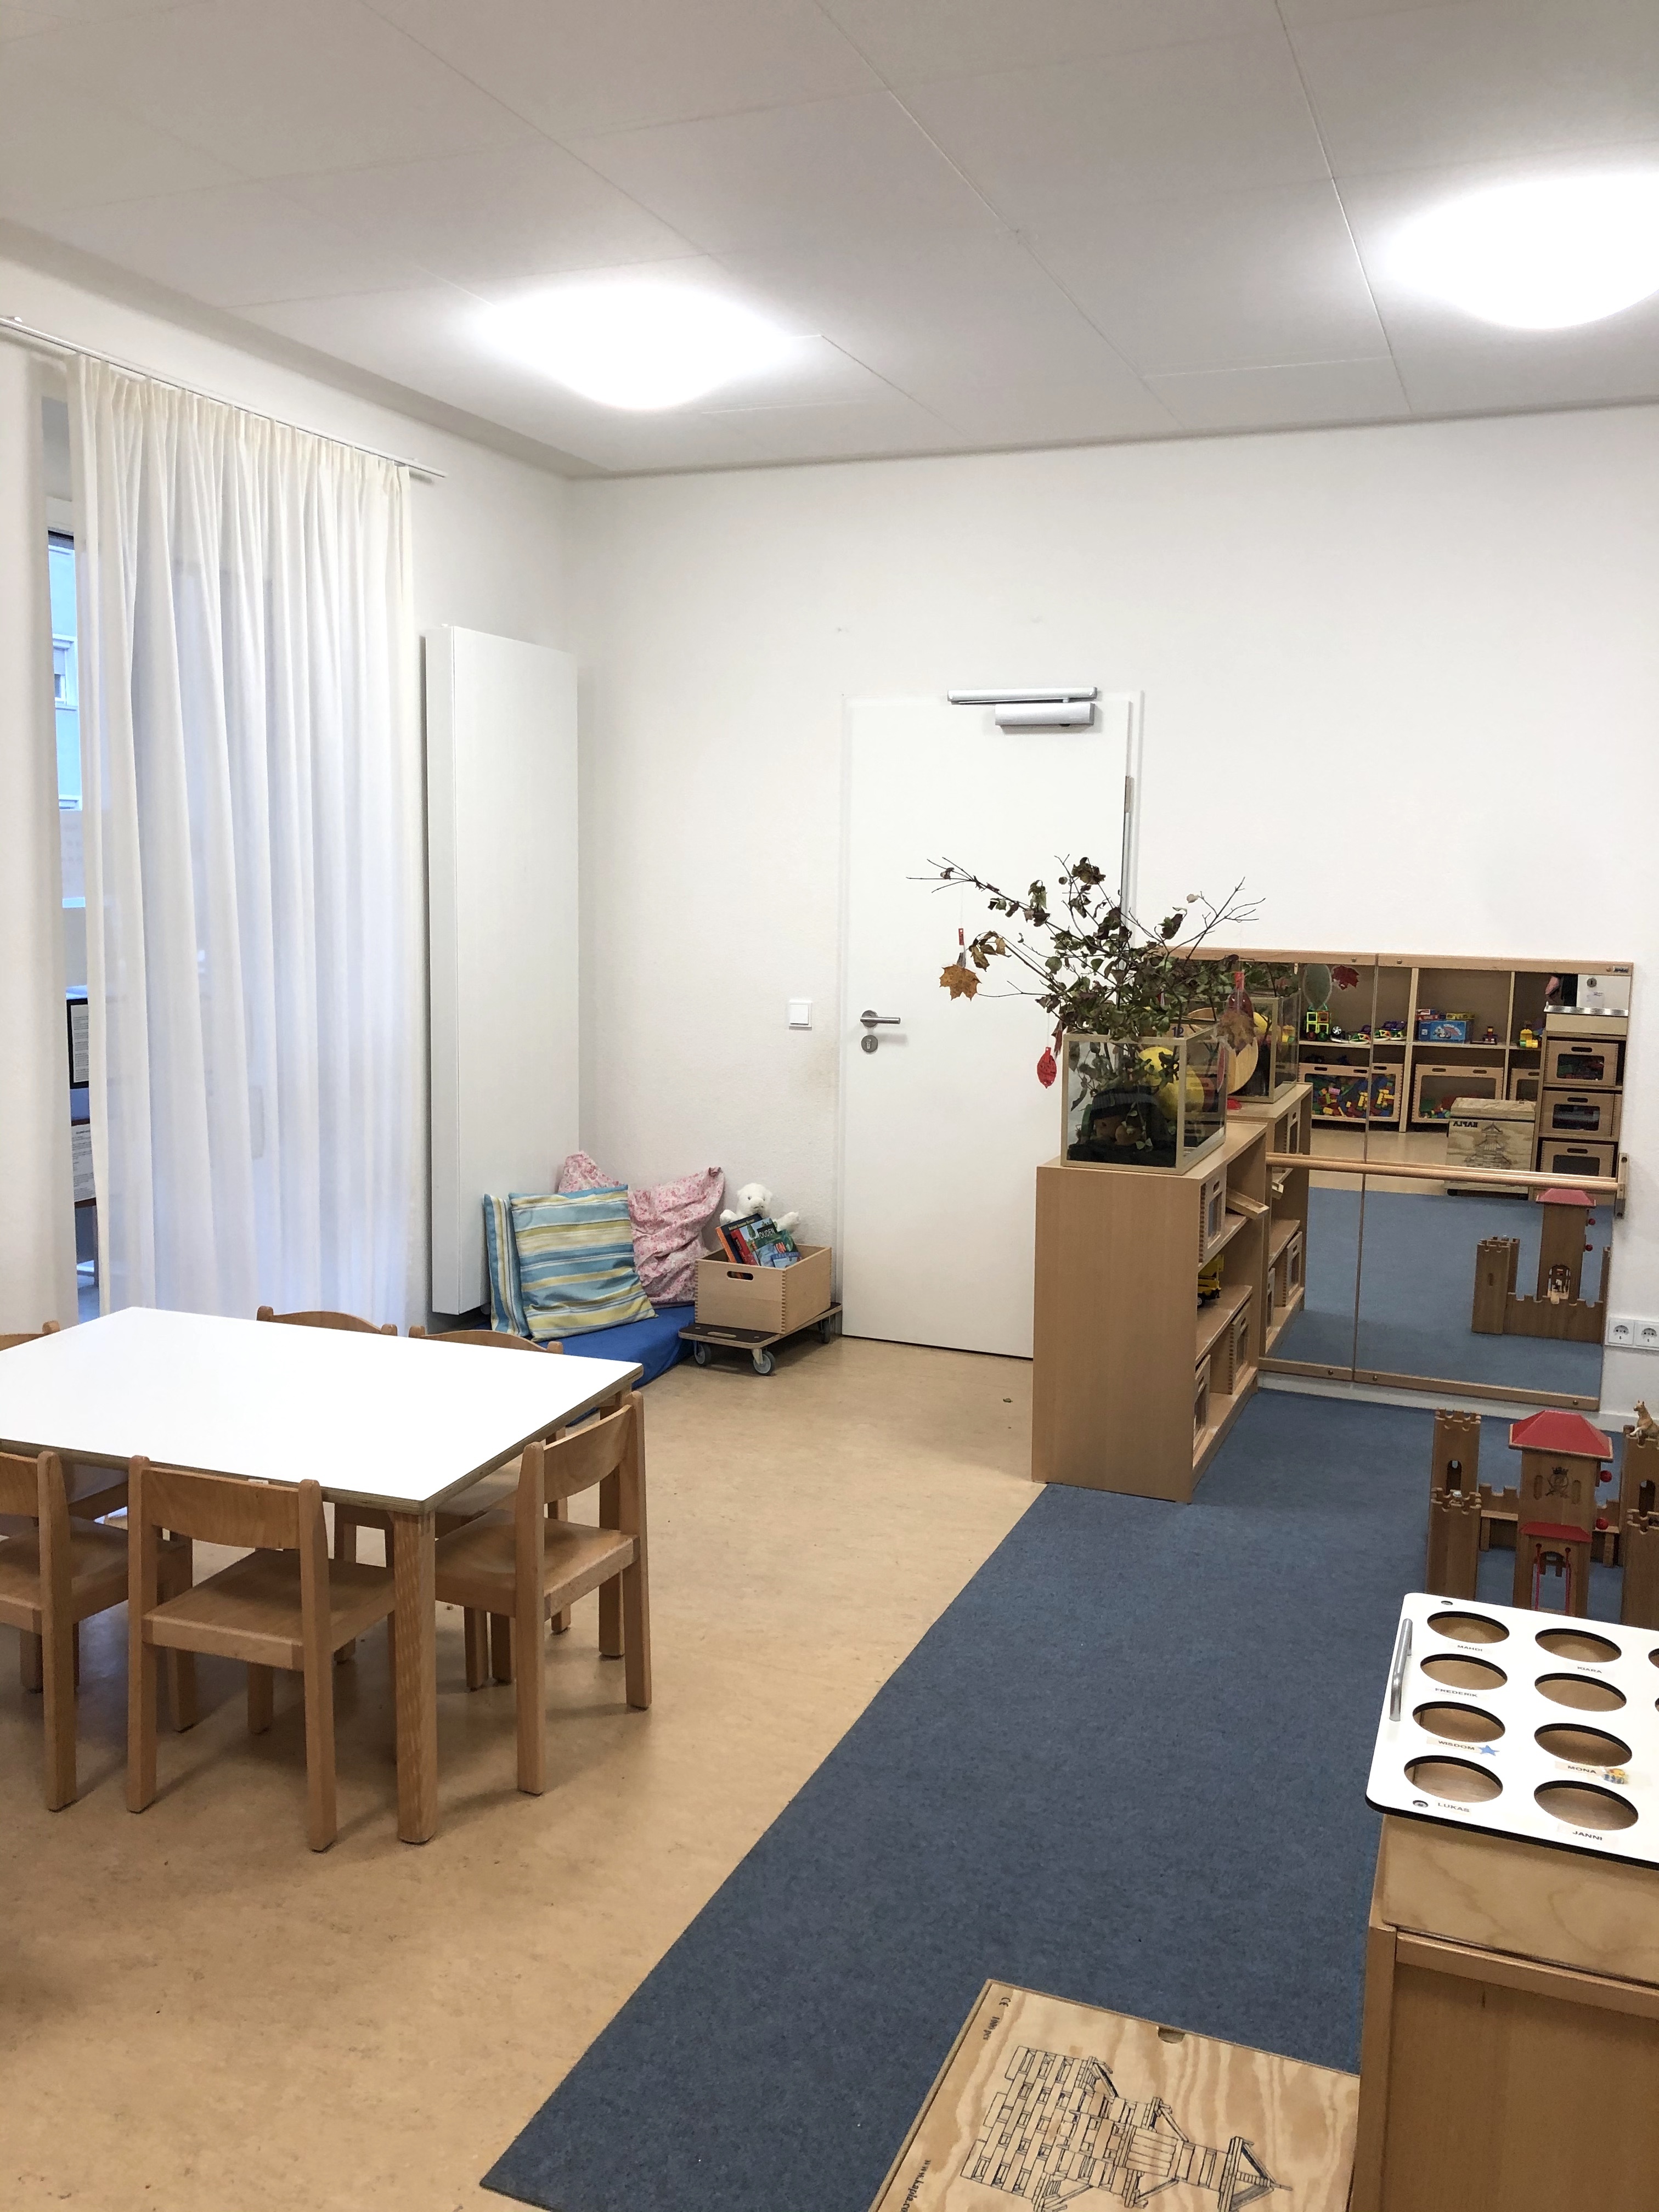 Das Bild zeigt das Bauzimmer im Kindergarten aus einer anderen Perspektive. Hier sehen wir einen Tisch und ein Regal auf der anderen Seite des Raumes.